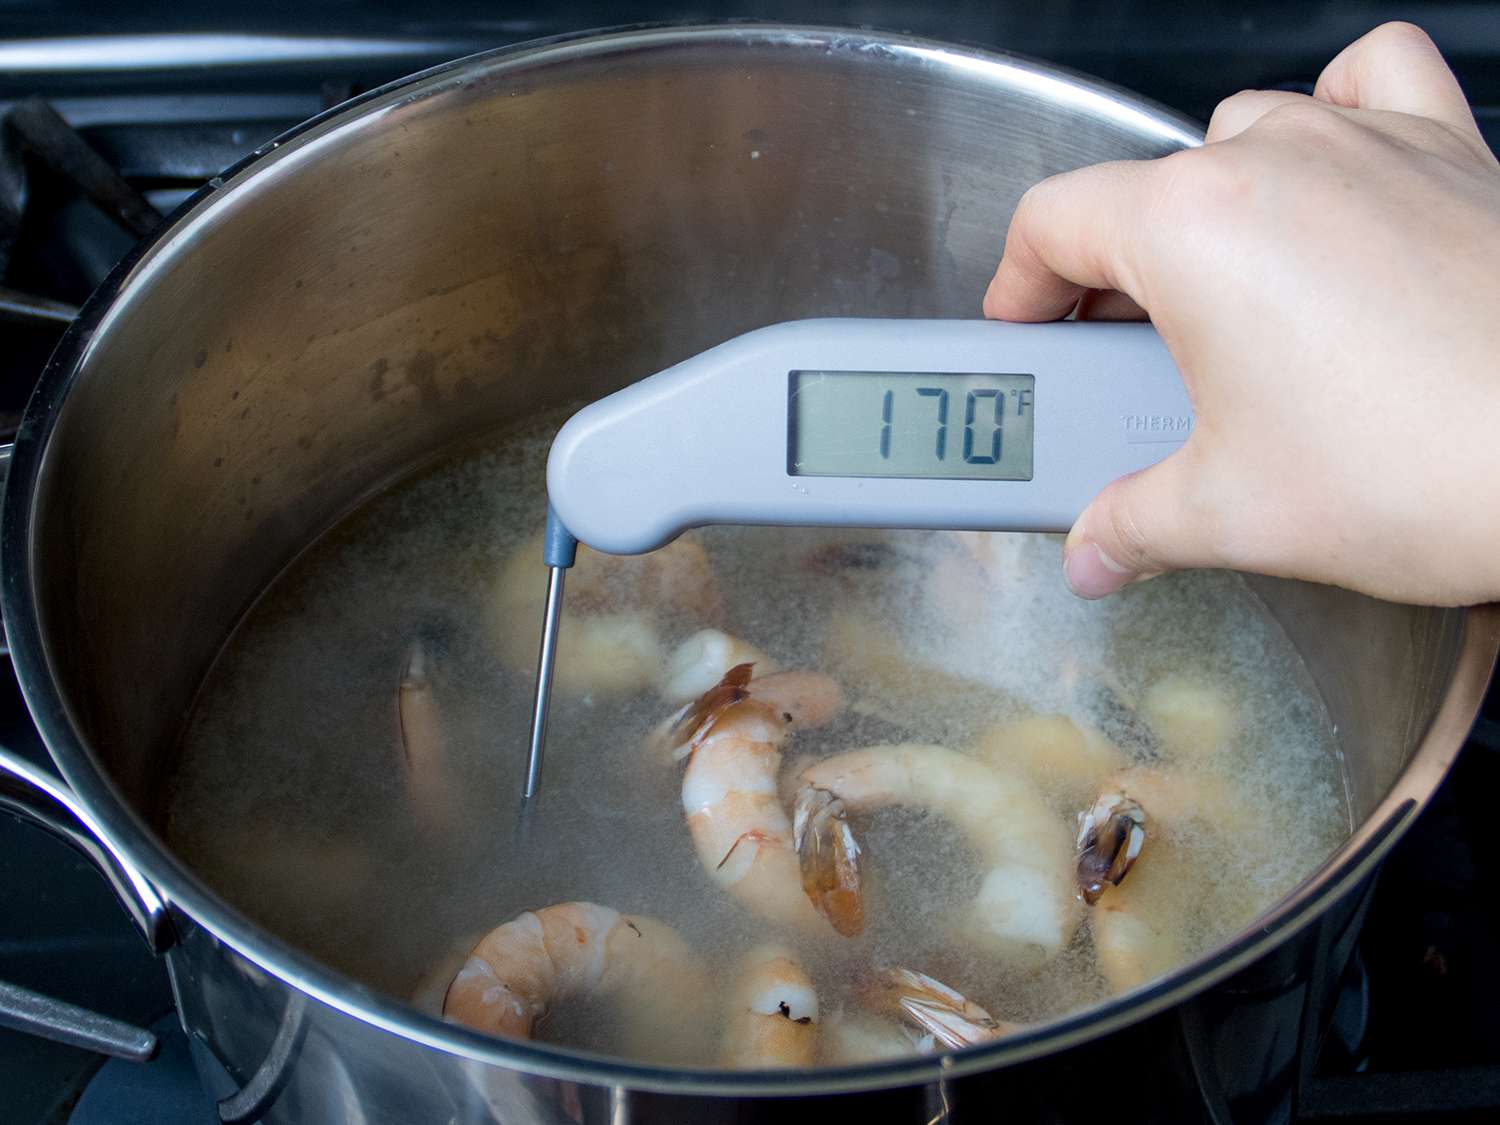 温度计在煮熟的虾锅中显示170华氏度的温度。